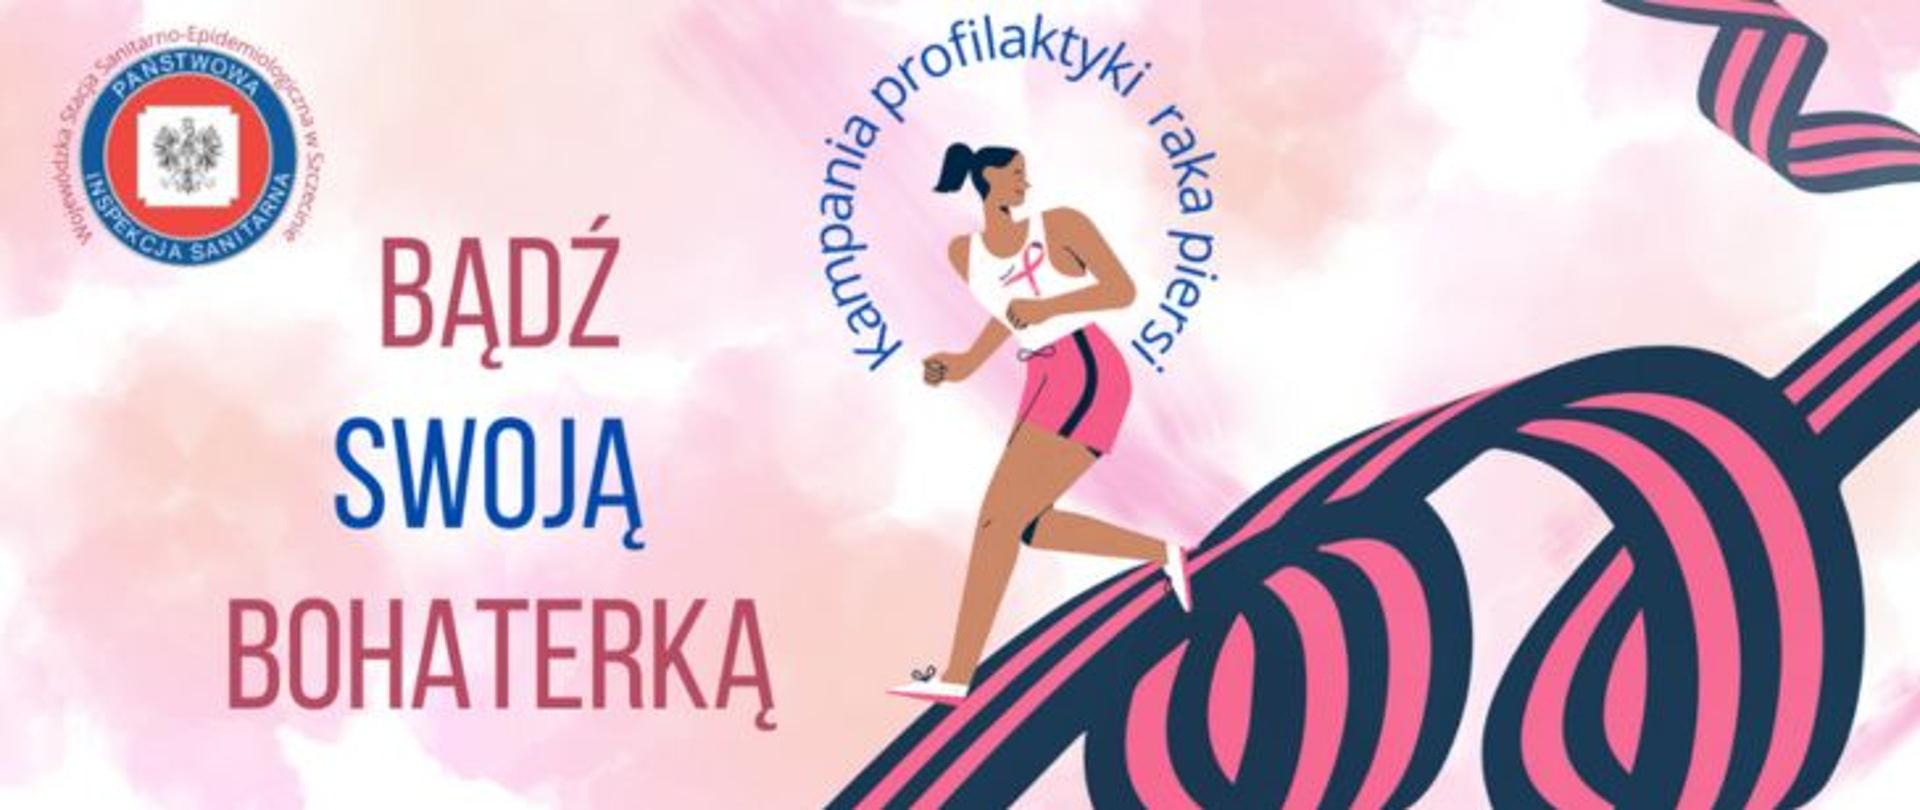 Grafika w różowej kolorystyce przedstawia postać biegnącej kobiety w sportowym stroju po wijącej się wstążce w czarno-różowe pasy, wokół głowy i tułowia kobiety w półokręgu niebieski napis Kampania profilaktyki raka piersi, z lewej strony czerwono-niebieski napis Bądź swoją bohaterką. W lewym górnym rogu logo Państwowej Inspekcji Sanitarnej a wokół niego różowy napis Wojewódzka Stacja Sanitarno-Epidemiologiczna w Szczecinie.
